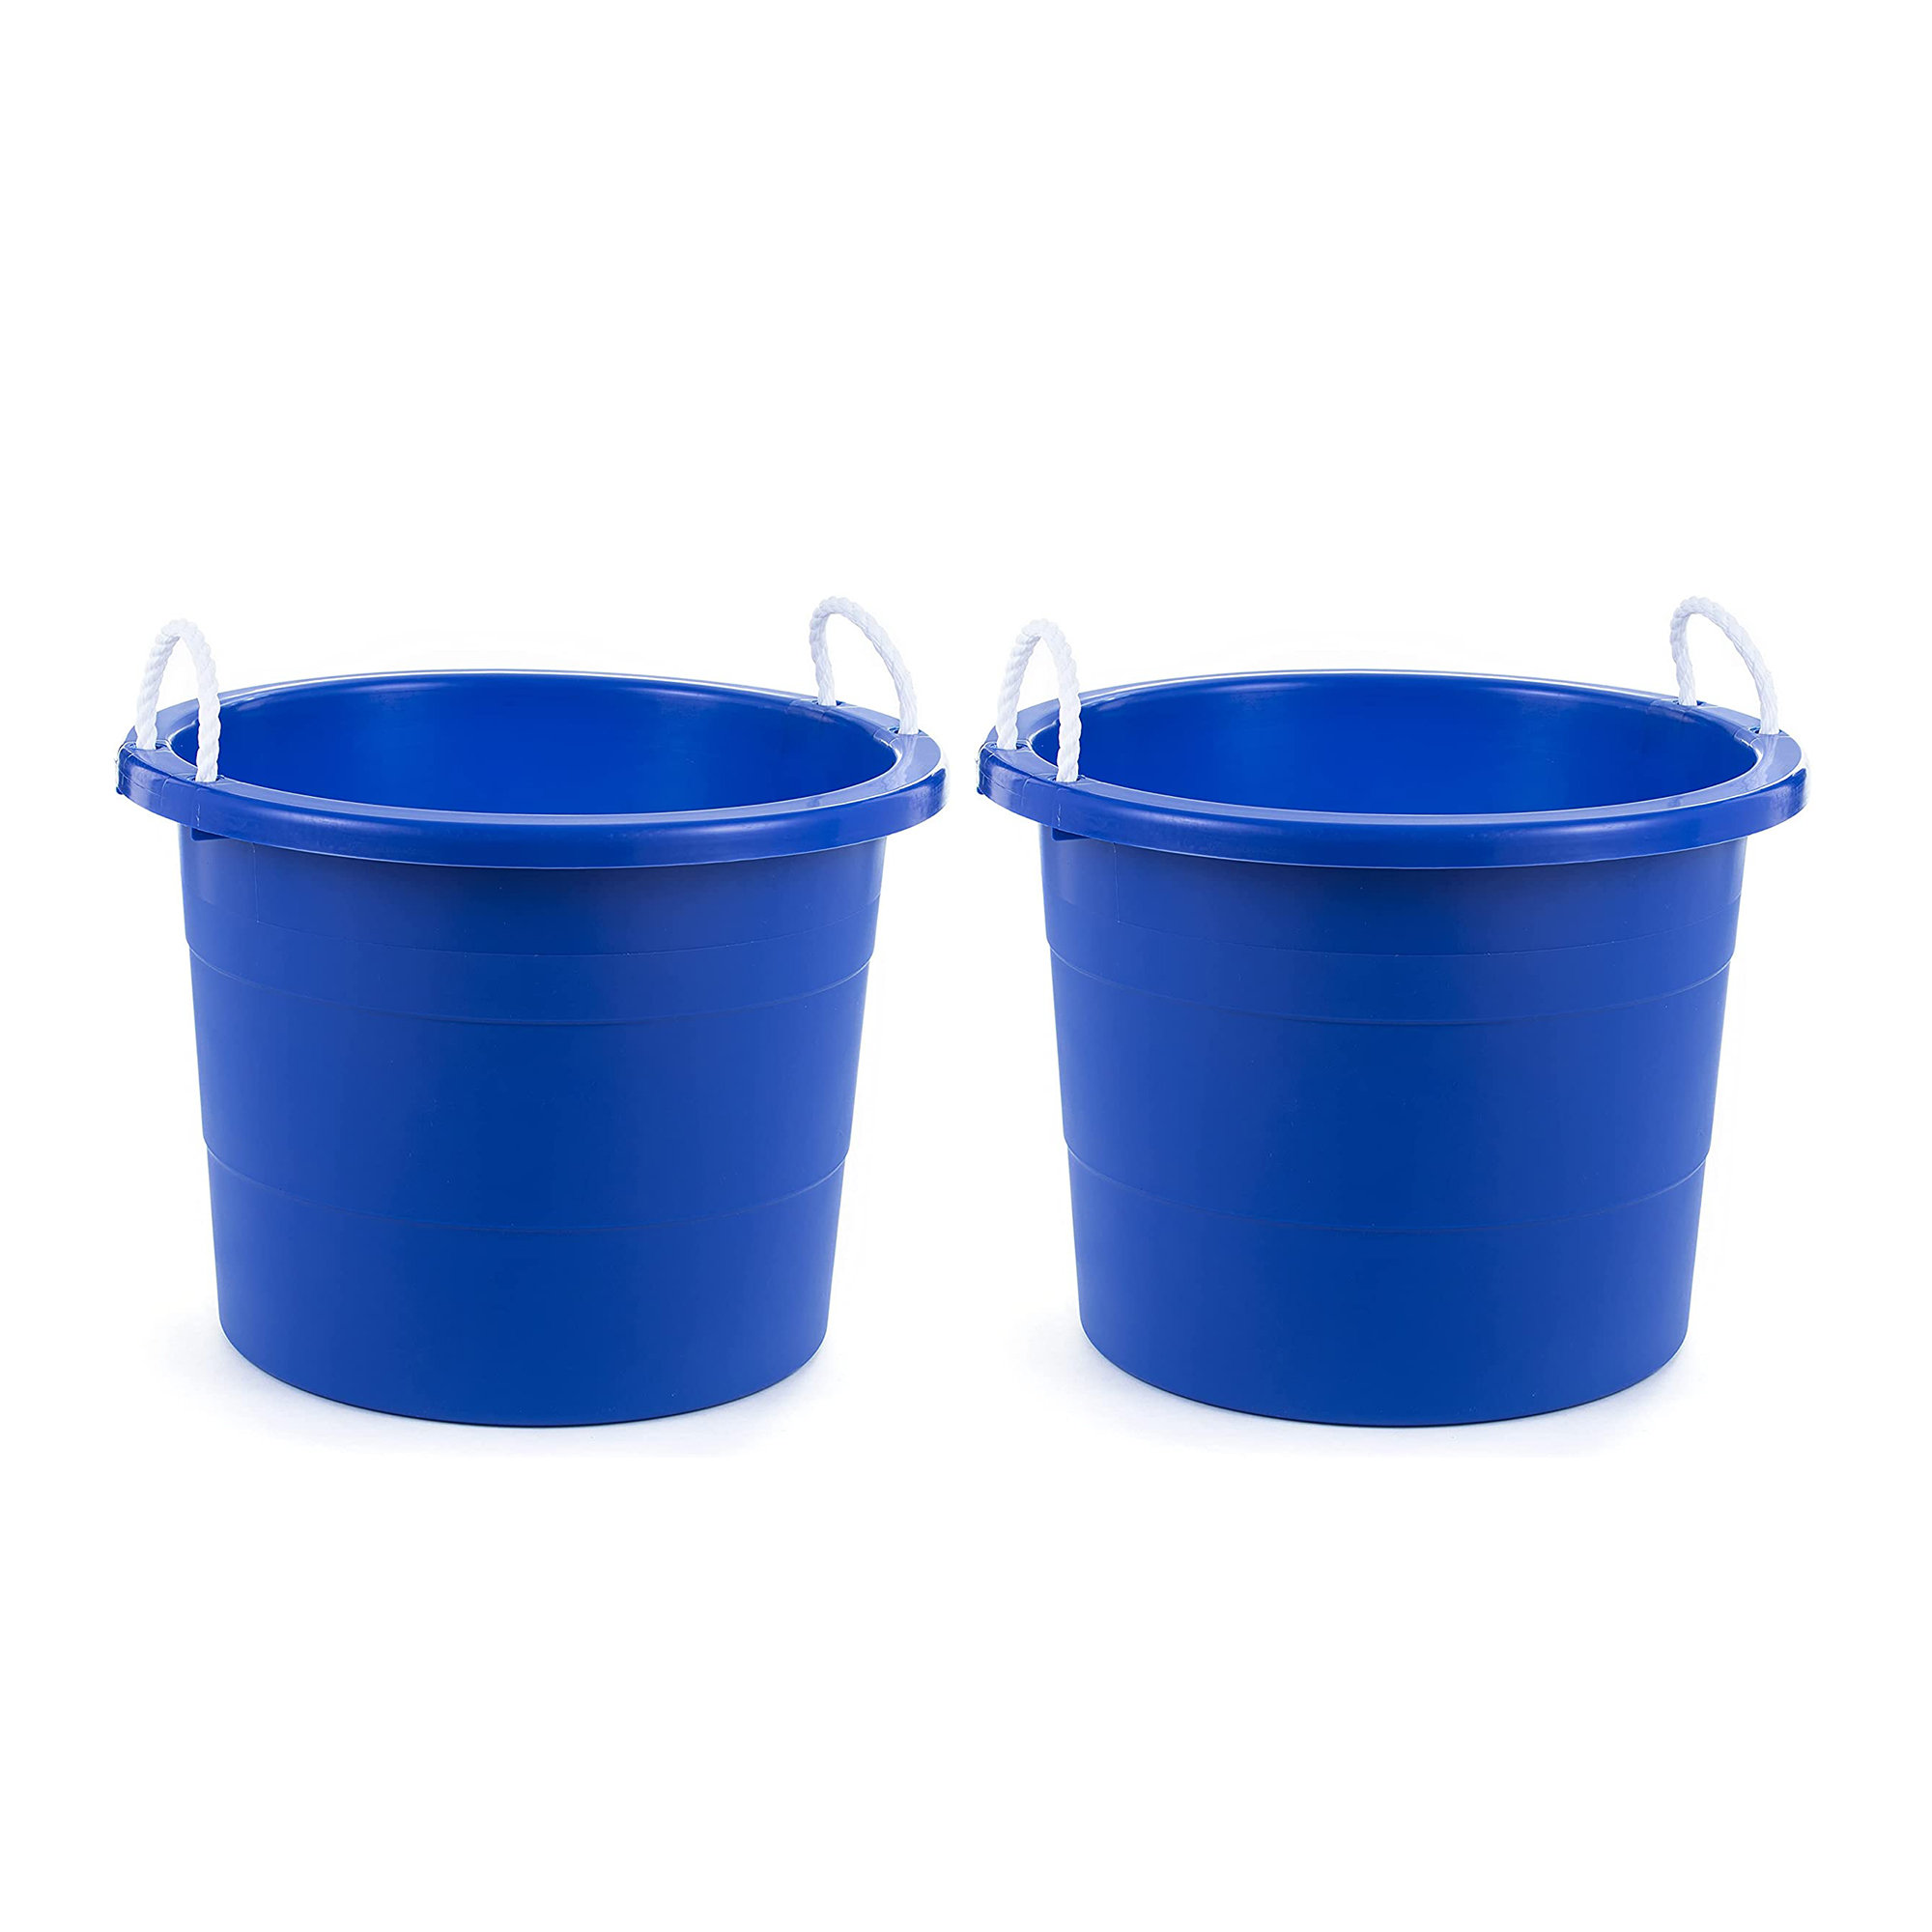 Homz 18 Gallon Plastic Utility Storage Bucket Tub w/ Rope Handles, Black, 6 Pack